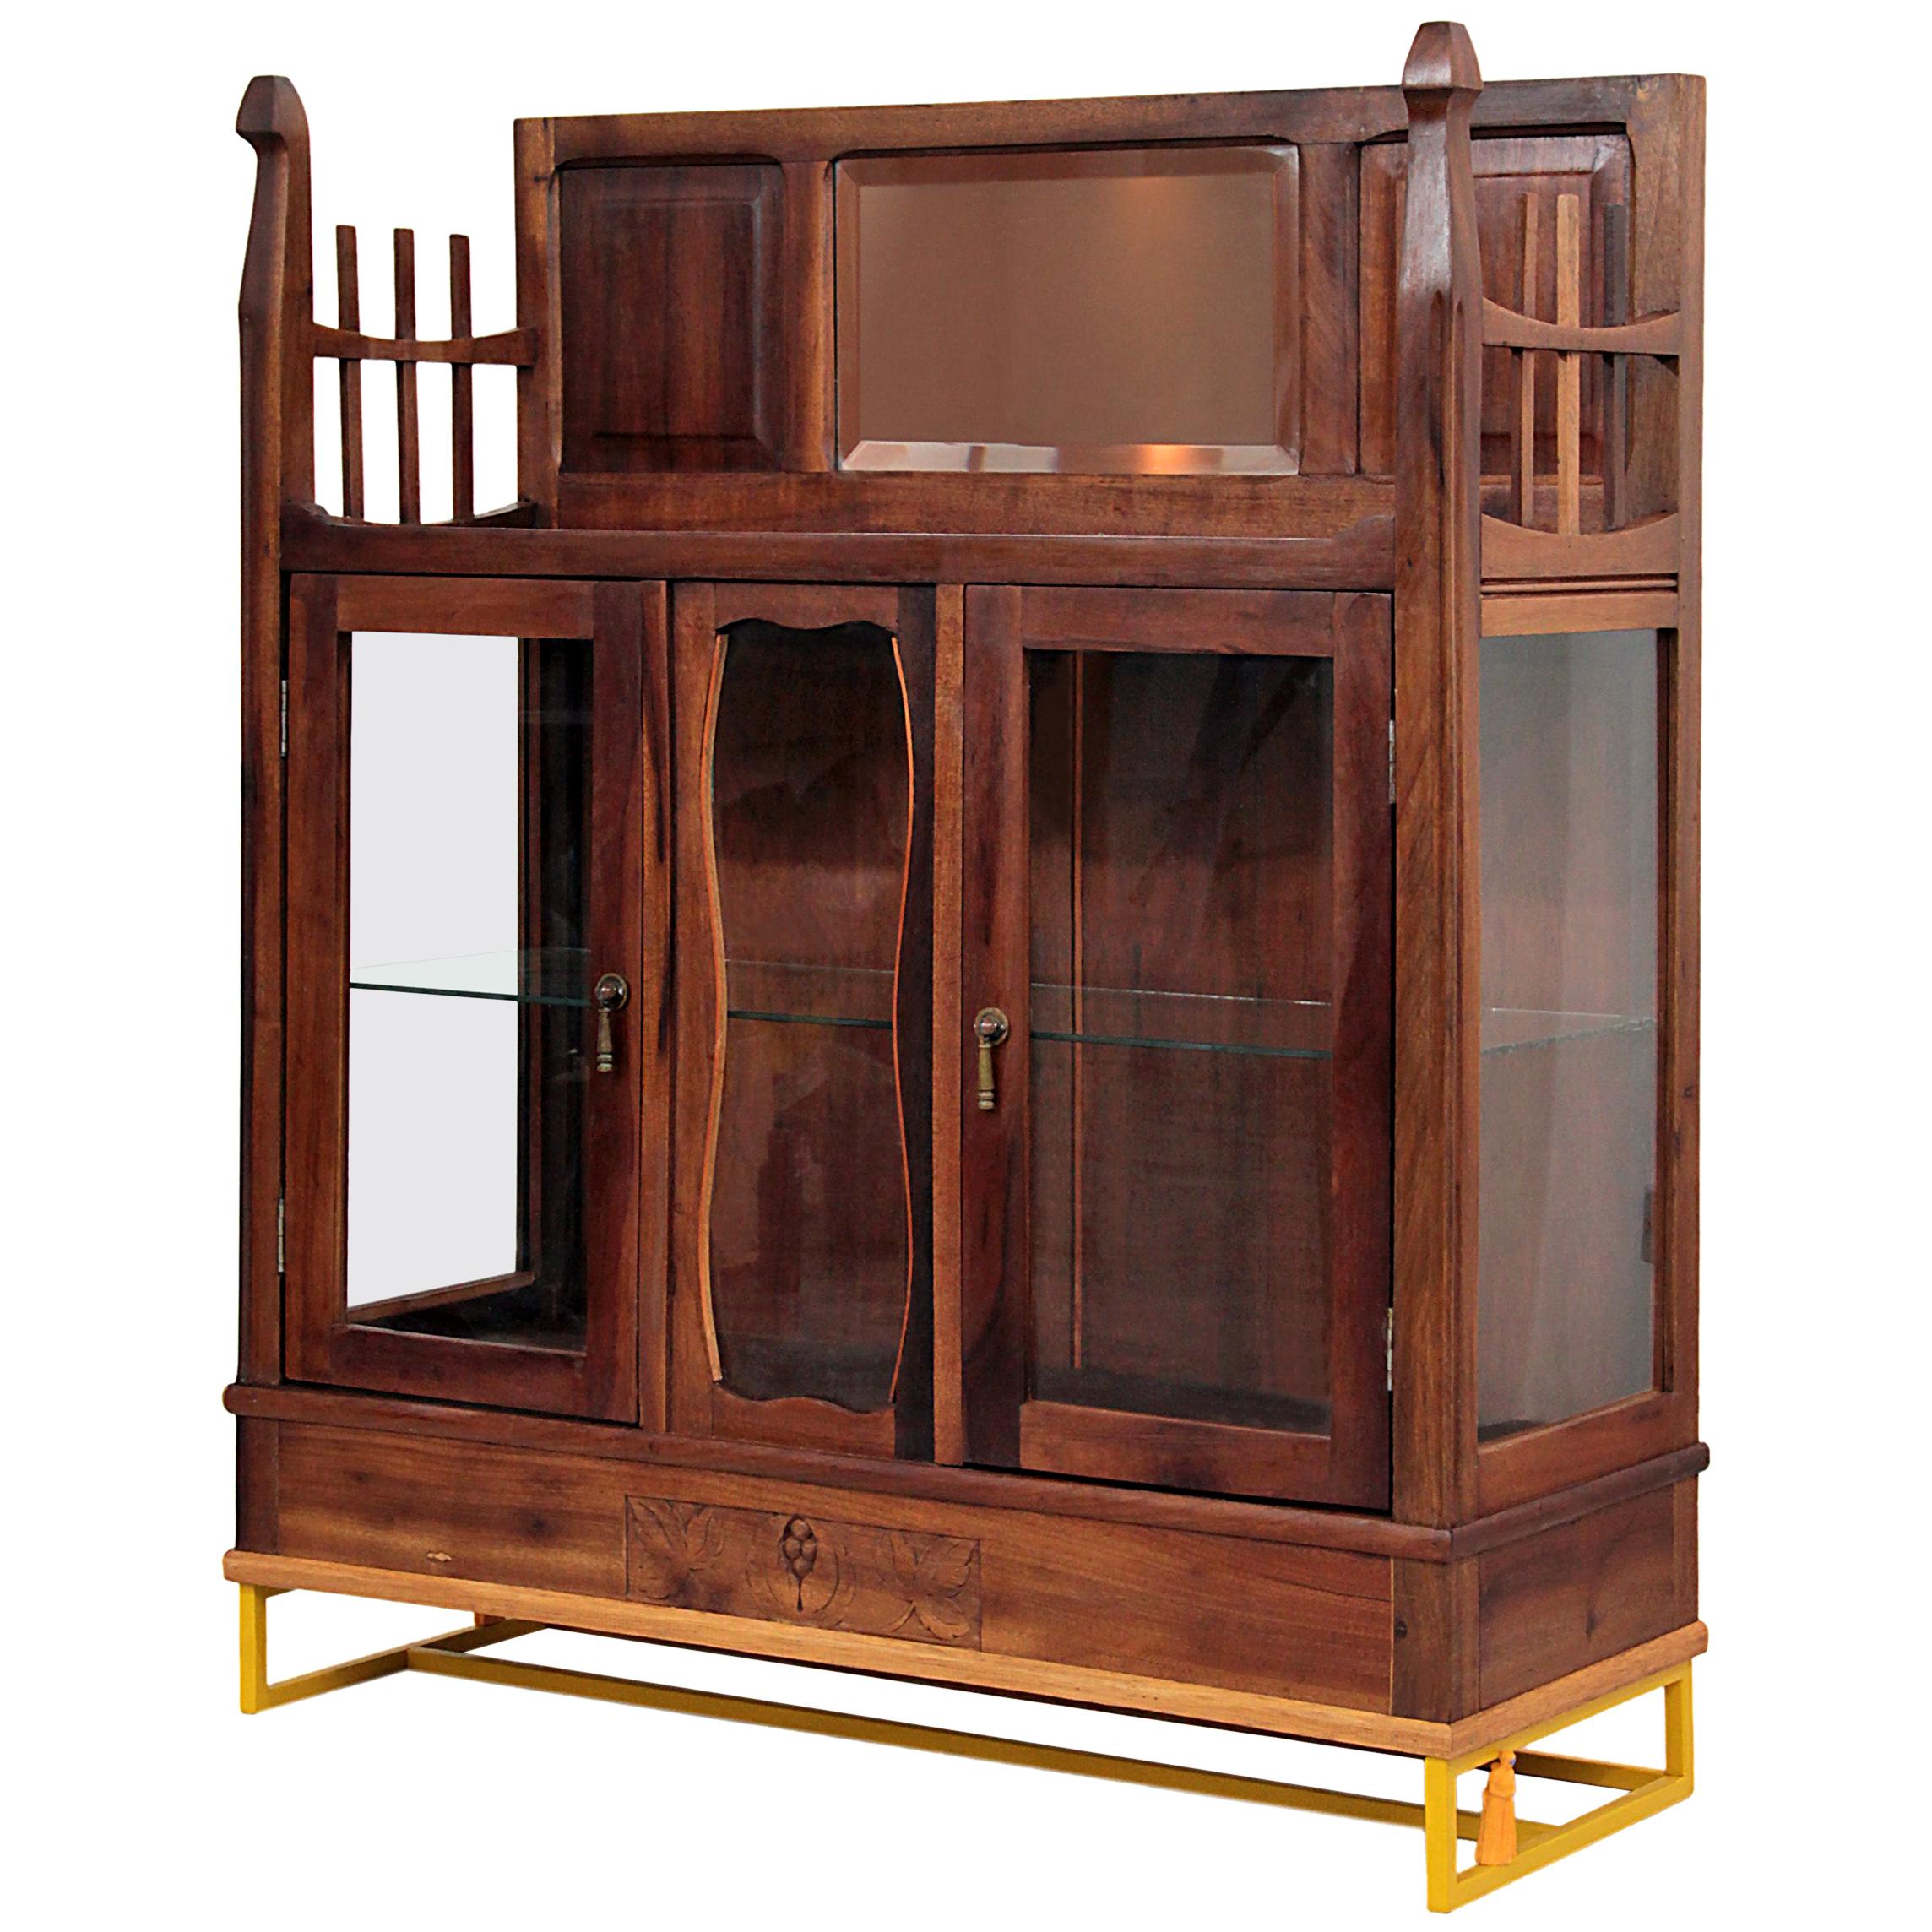 Antique Brazilian Wooden Contemporary Baroque Glass Cabinet, Restauro #1 For Sale